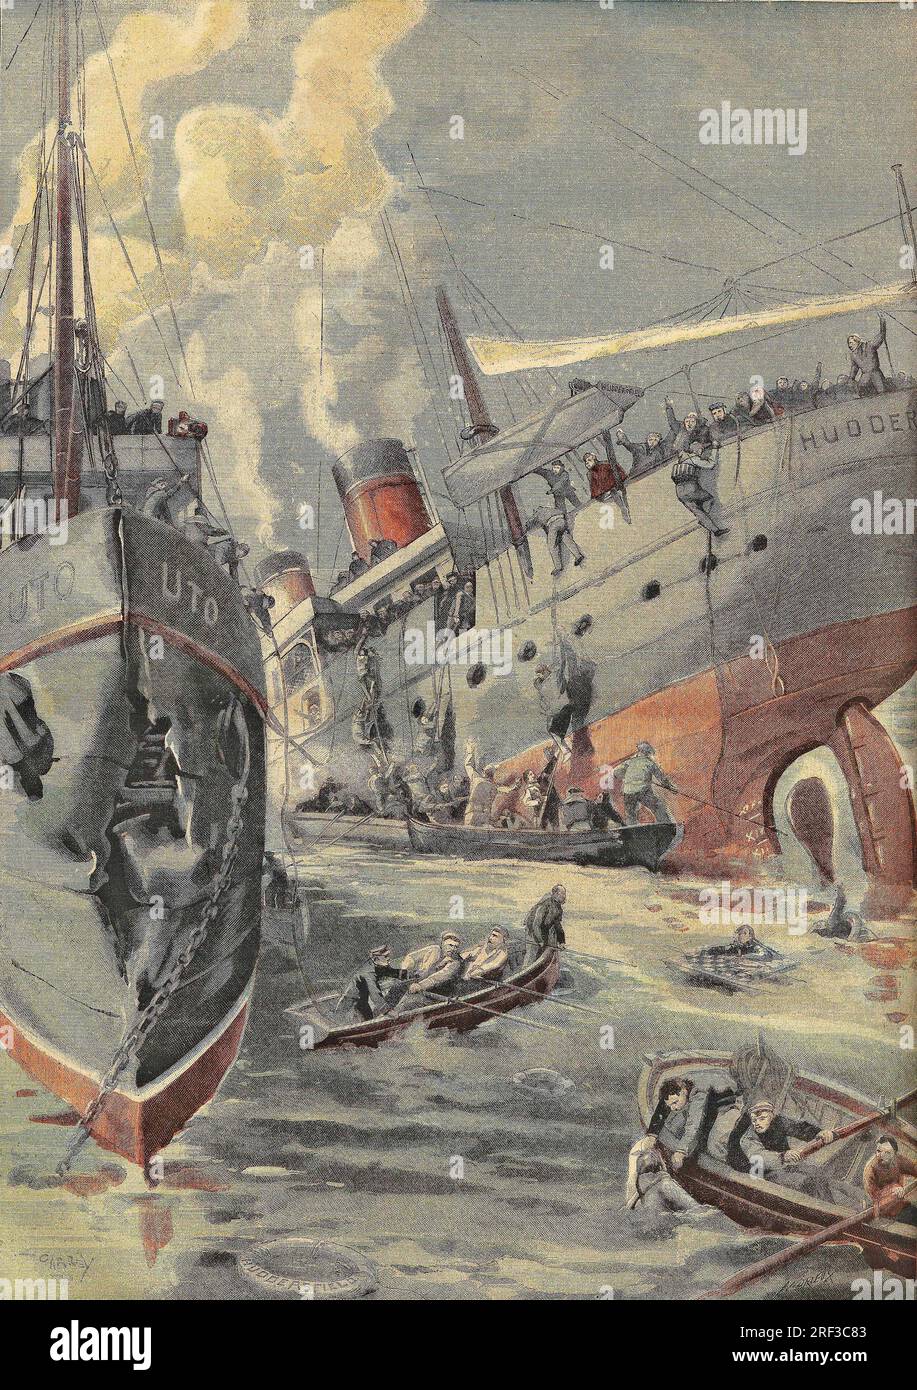 Collision entre le steamer anglais 'Huddersfieldd' et le batiment norvegien 'UTO' sur l'Escaut a Saeftingen. Gravure dans 'le petit parisienn', le 14061903. Banque D'Images